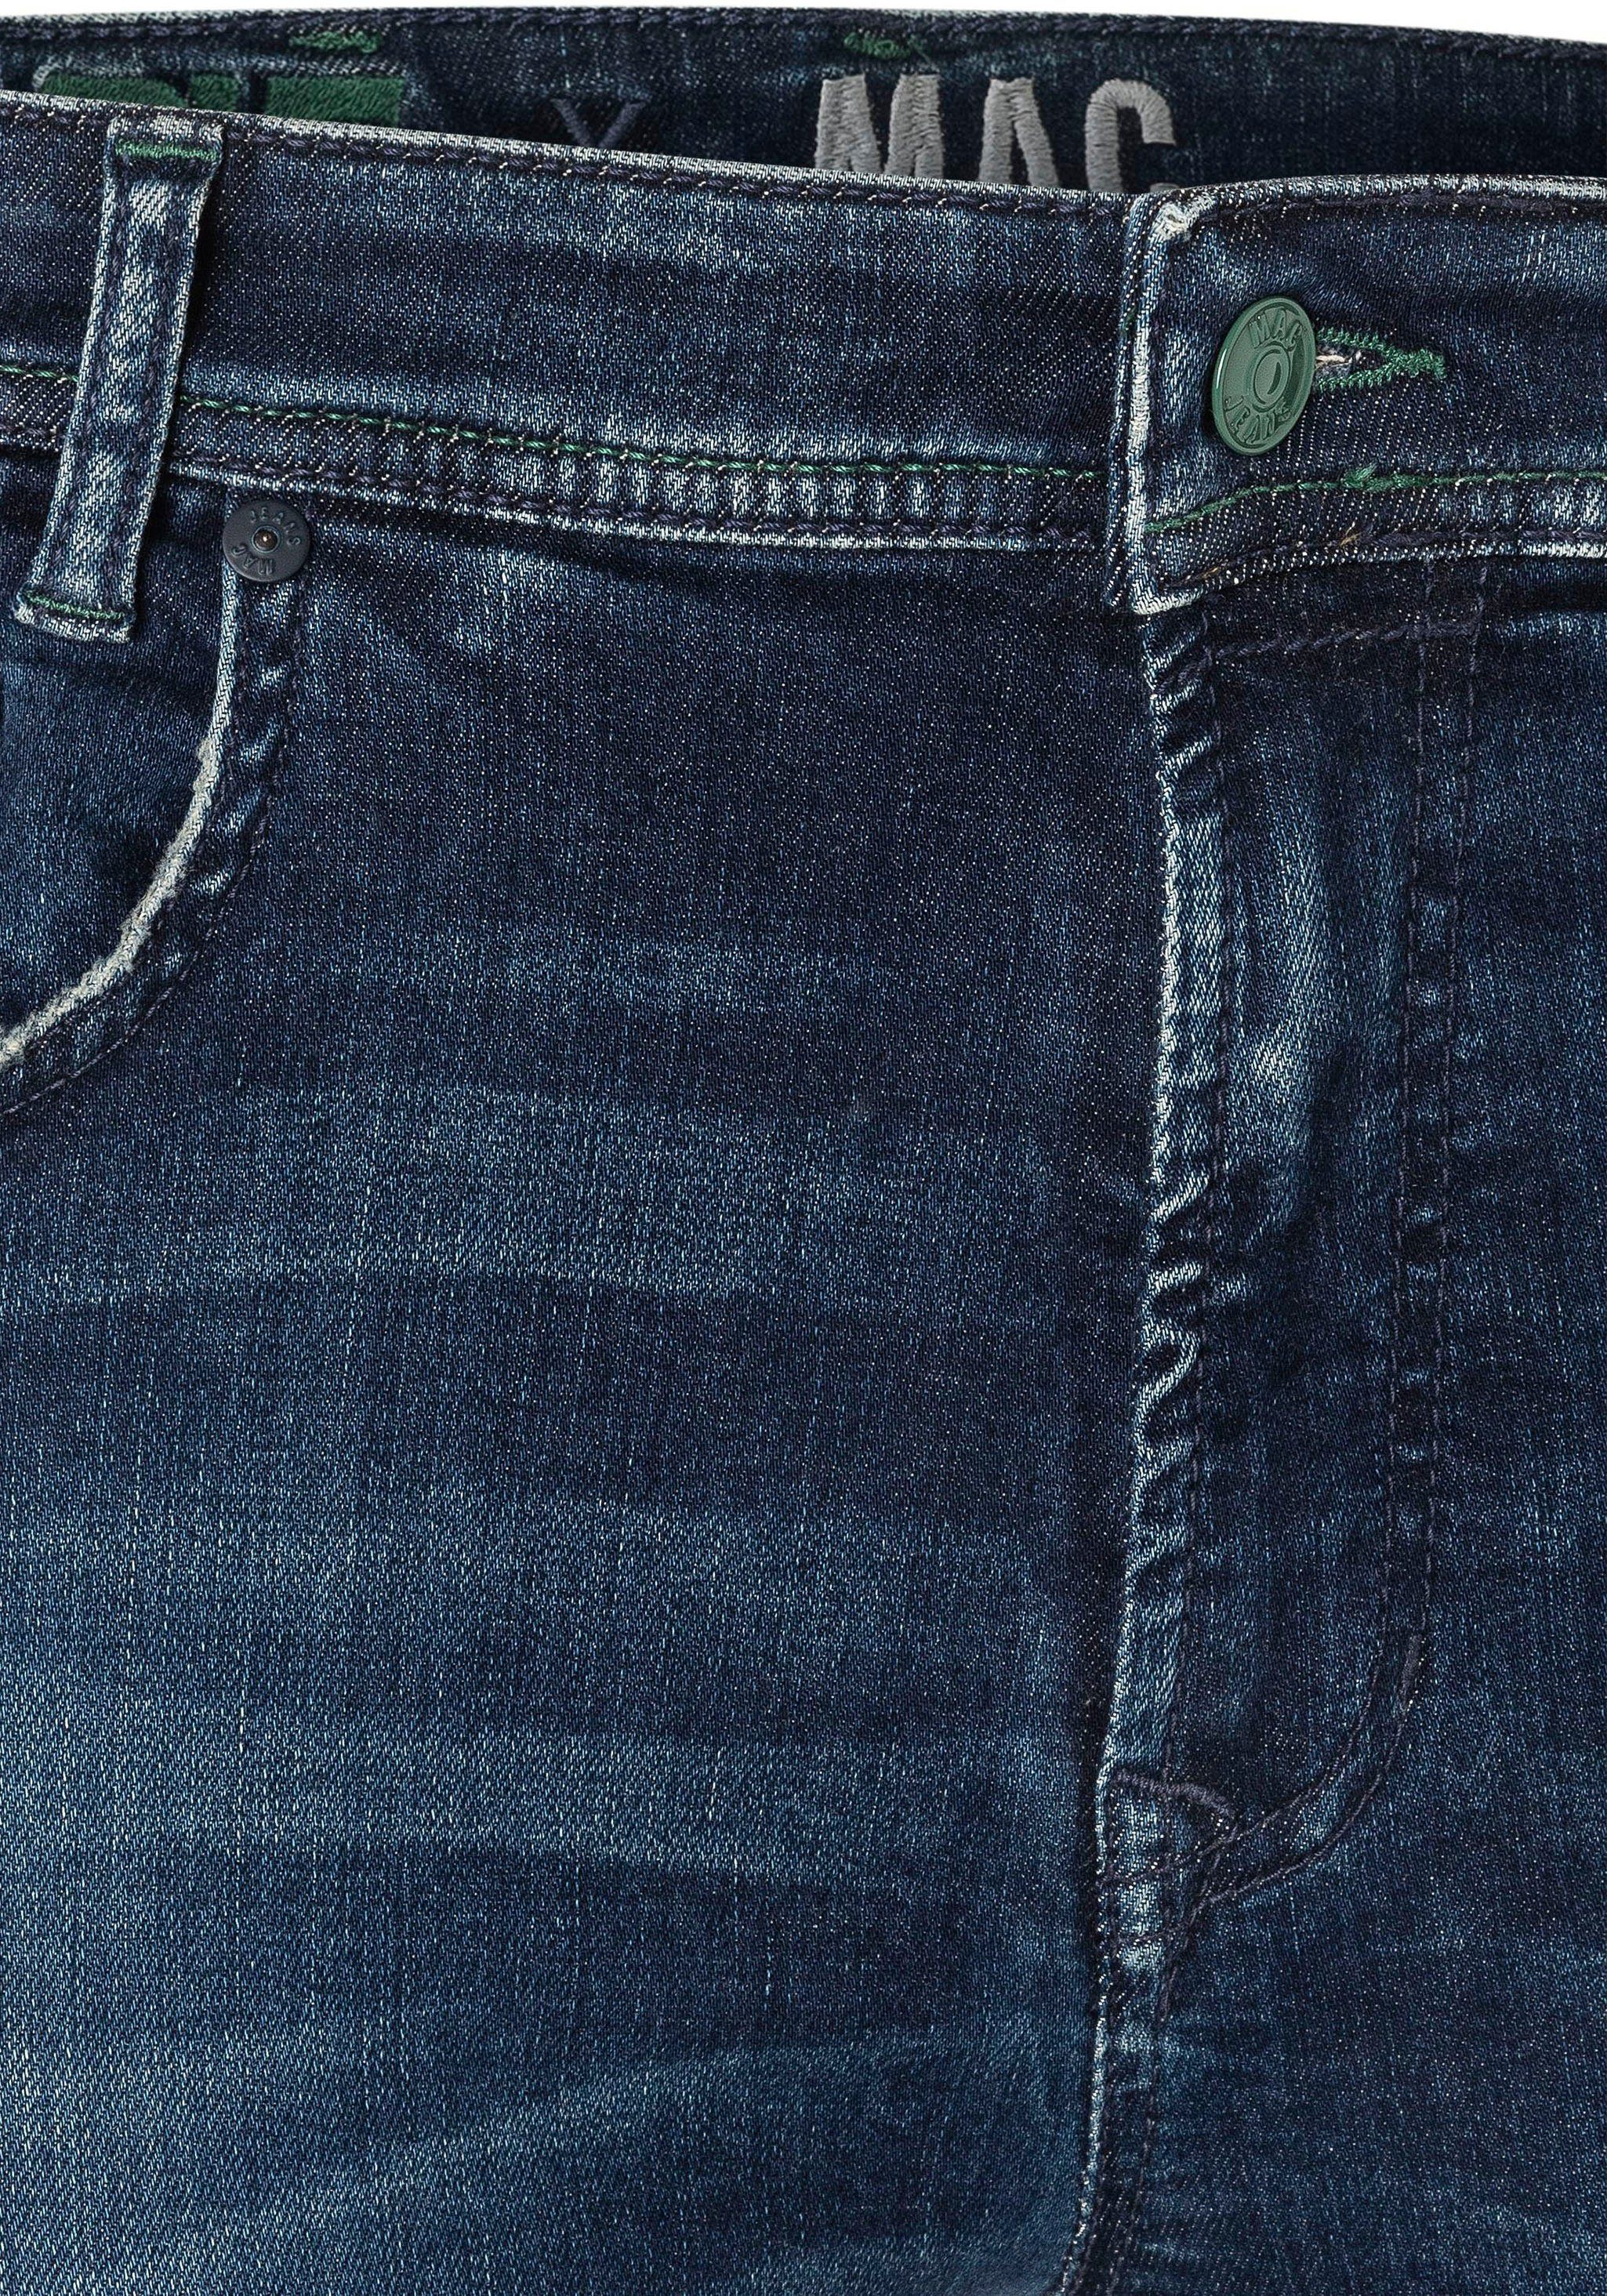 MAC Straight-Jeans Flexx-Driver super dark authentic used blue elastisch